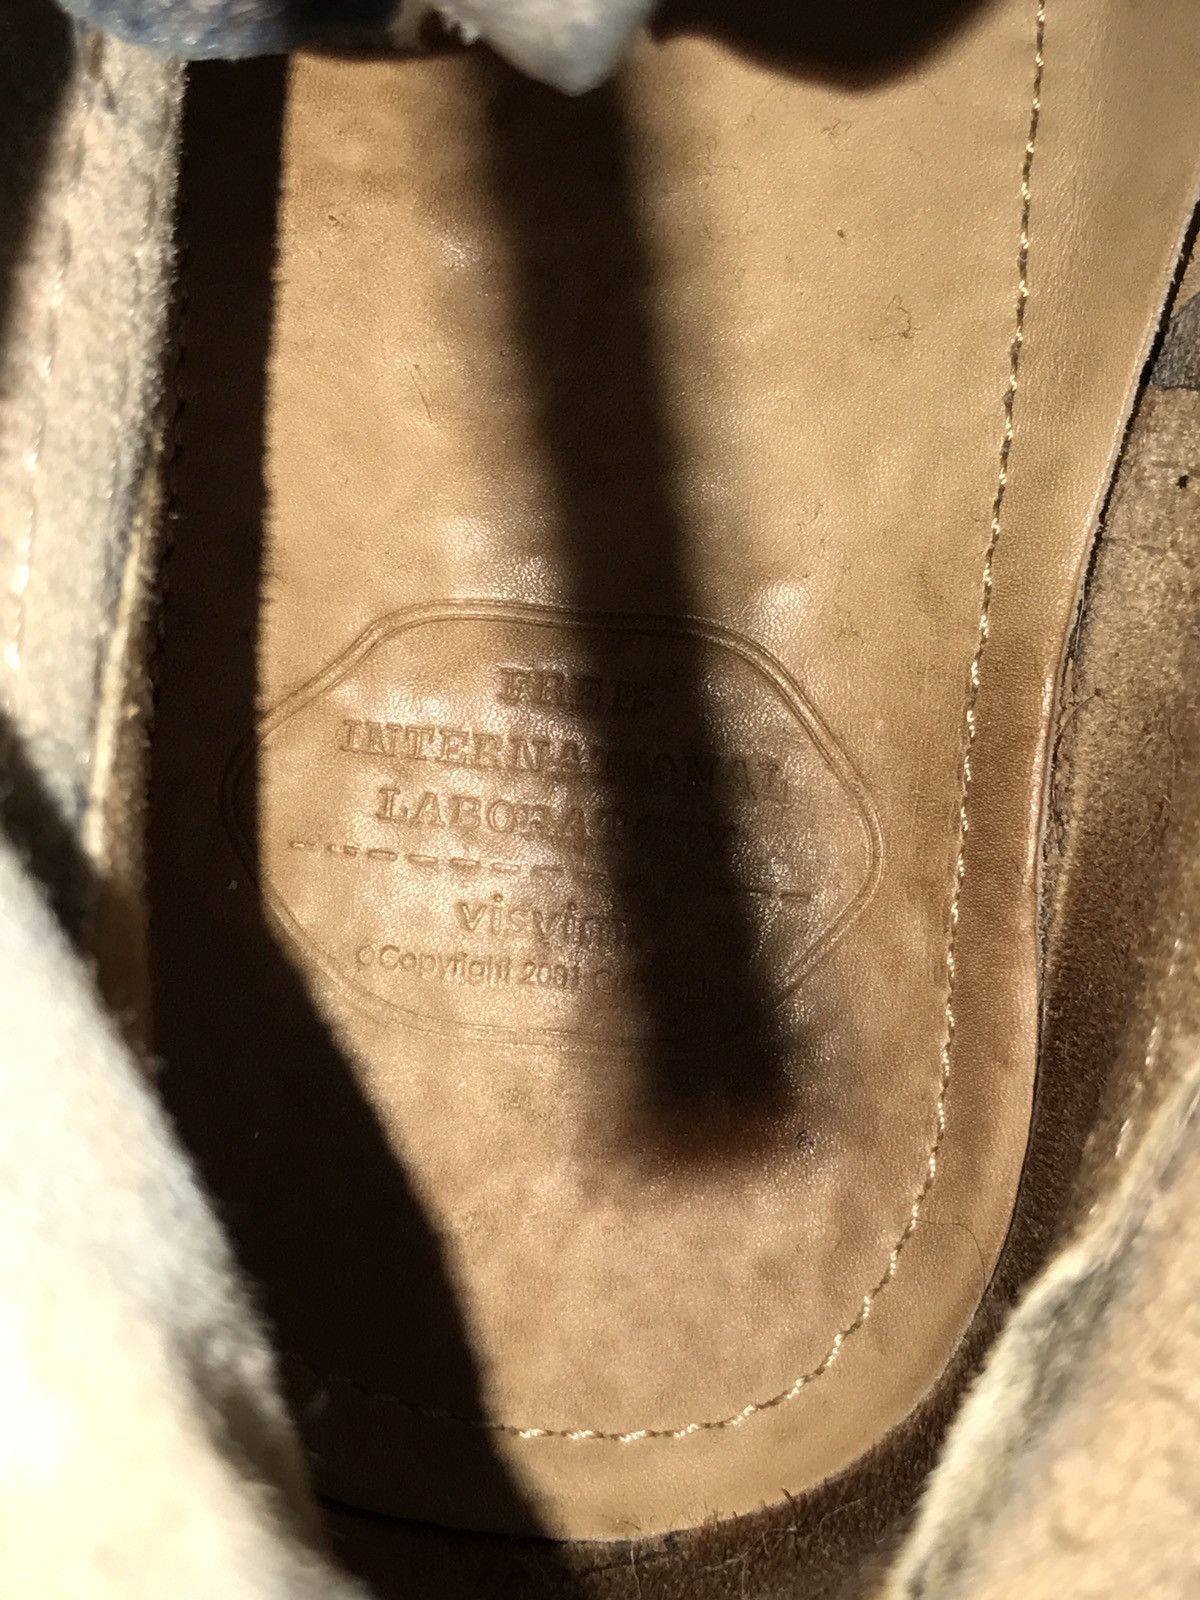 Visvim Visvim Vanguard Boots Folk Gray Size US 9 / EU 42 - 6 Thumbnail